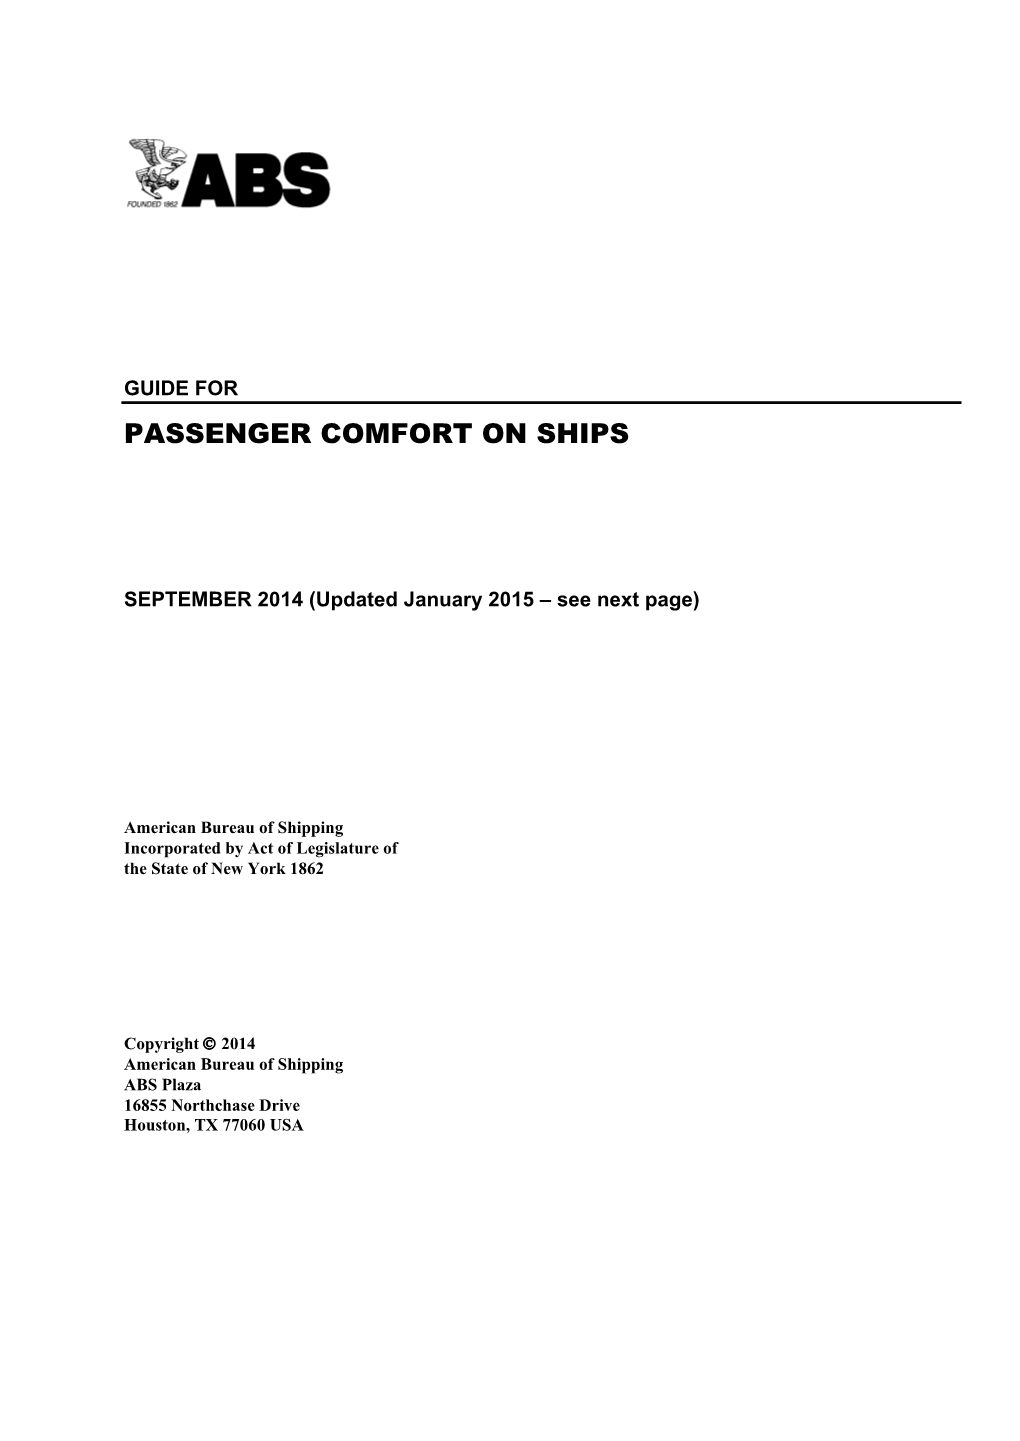 Guide for Passenger Comfort on Ships